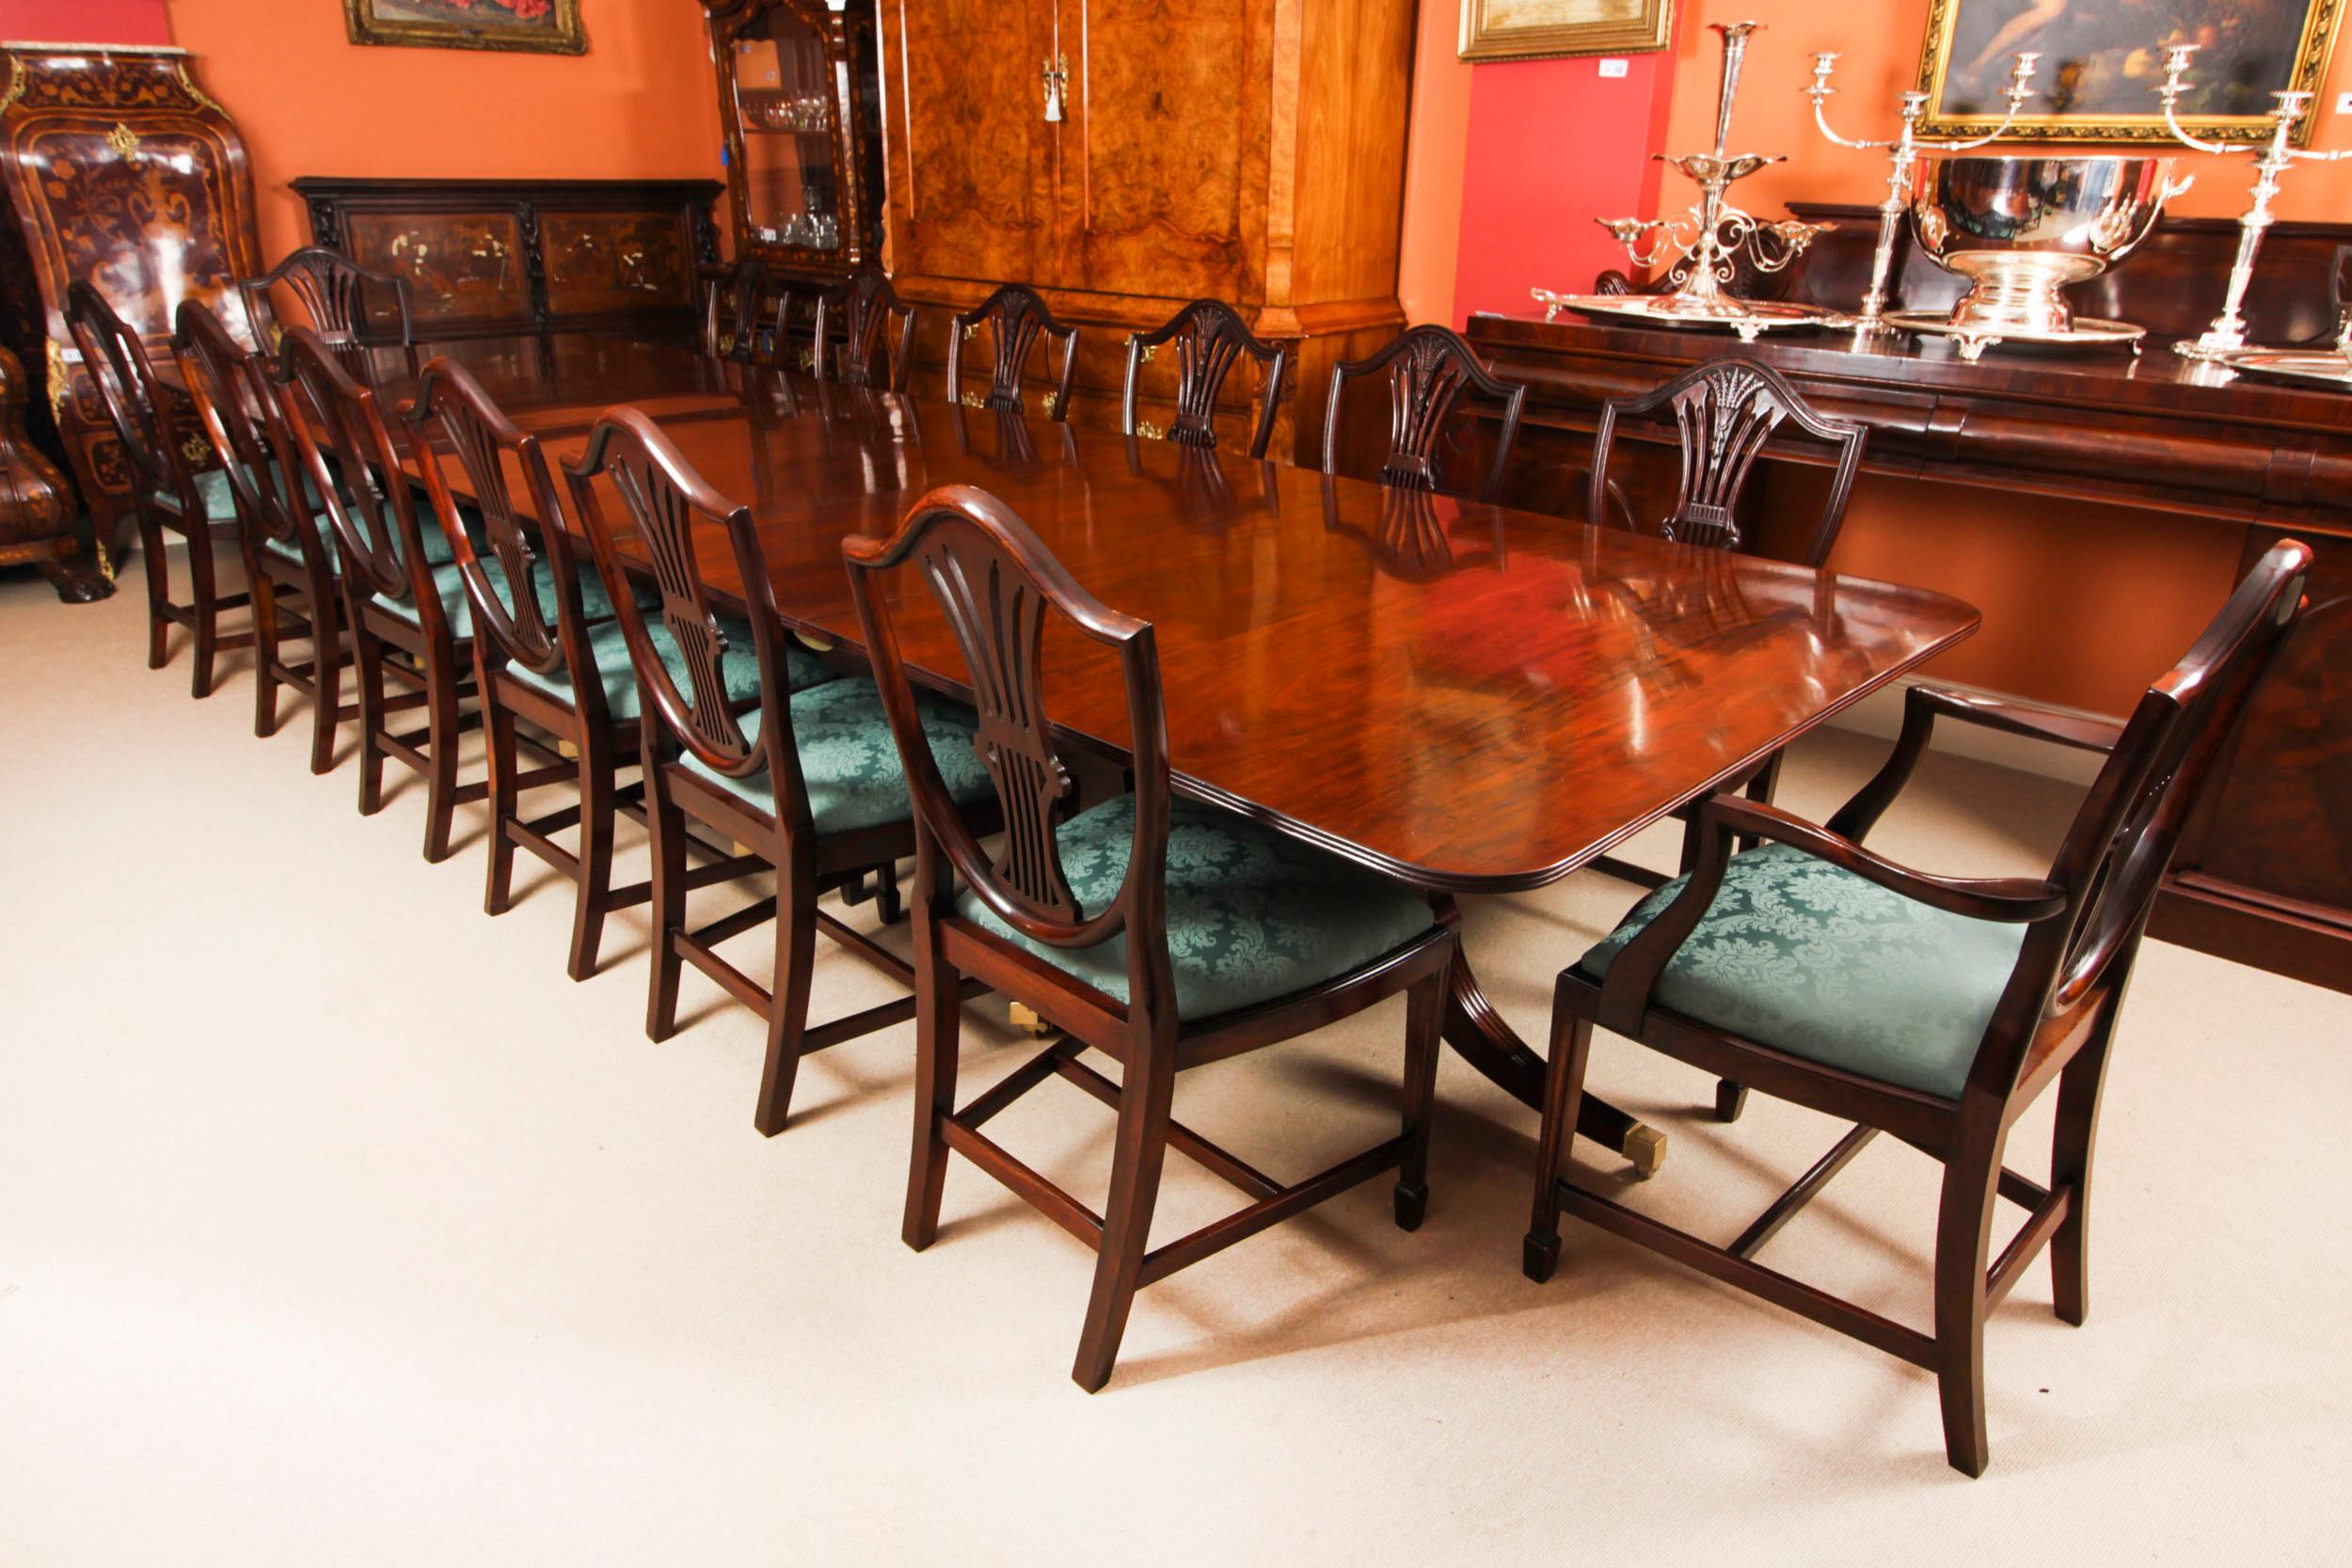 Dies ist ein eleganter antiker Esstisch im Regency-Revival-Stil, der bequem Platz für vierzehn Personen bietet und aus der zweiten Hälfte des 19.

Der Tisch hat zwei Platten, die je nach Bedarf hinzugefügt oder entfernt werden können. Er steht auf